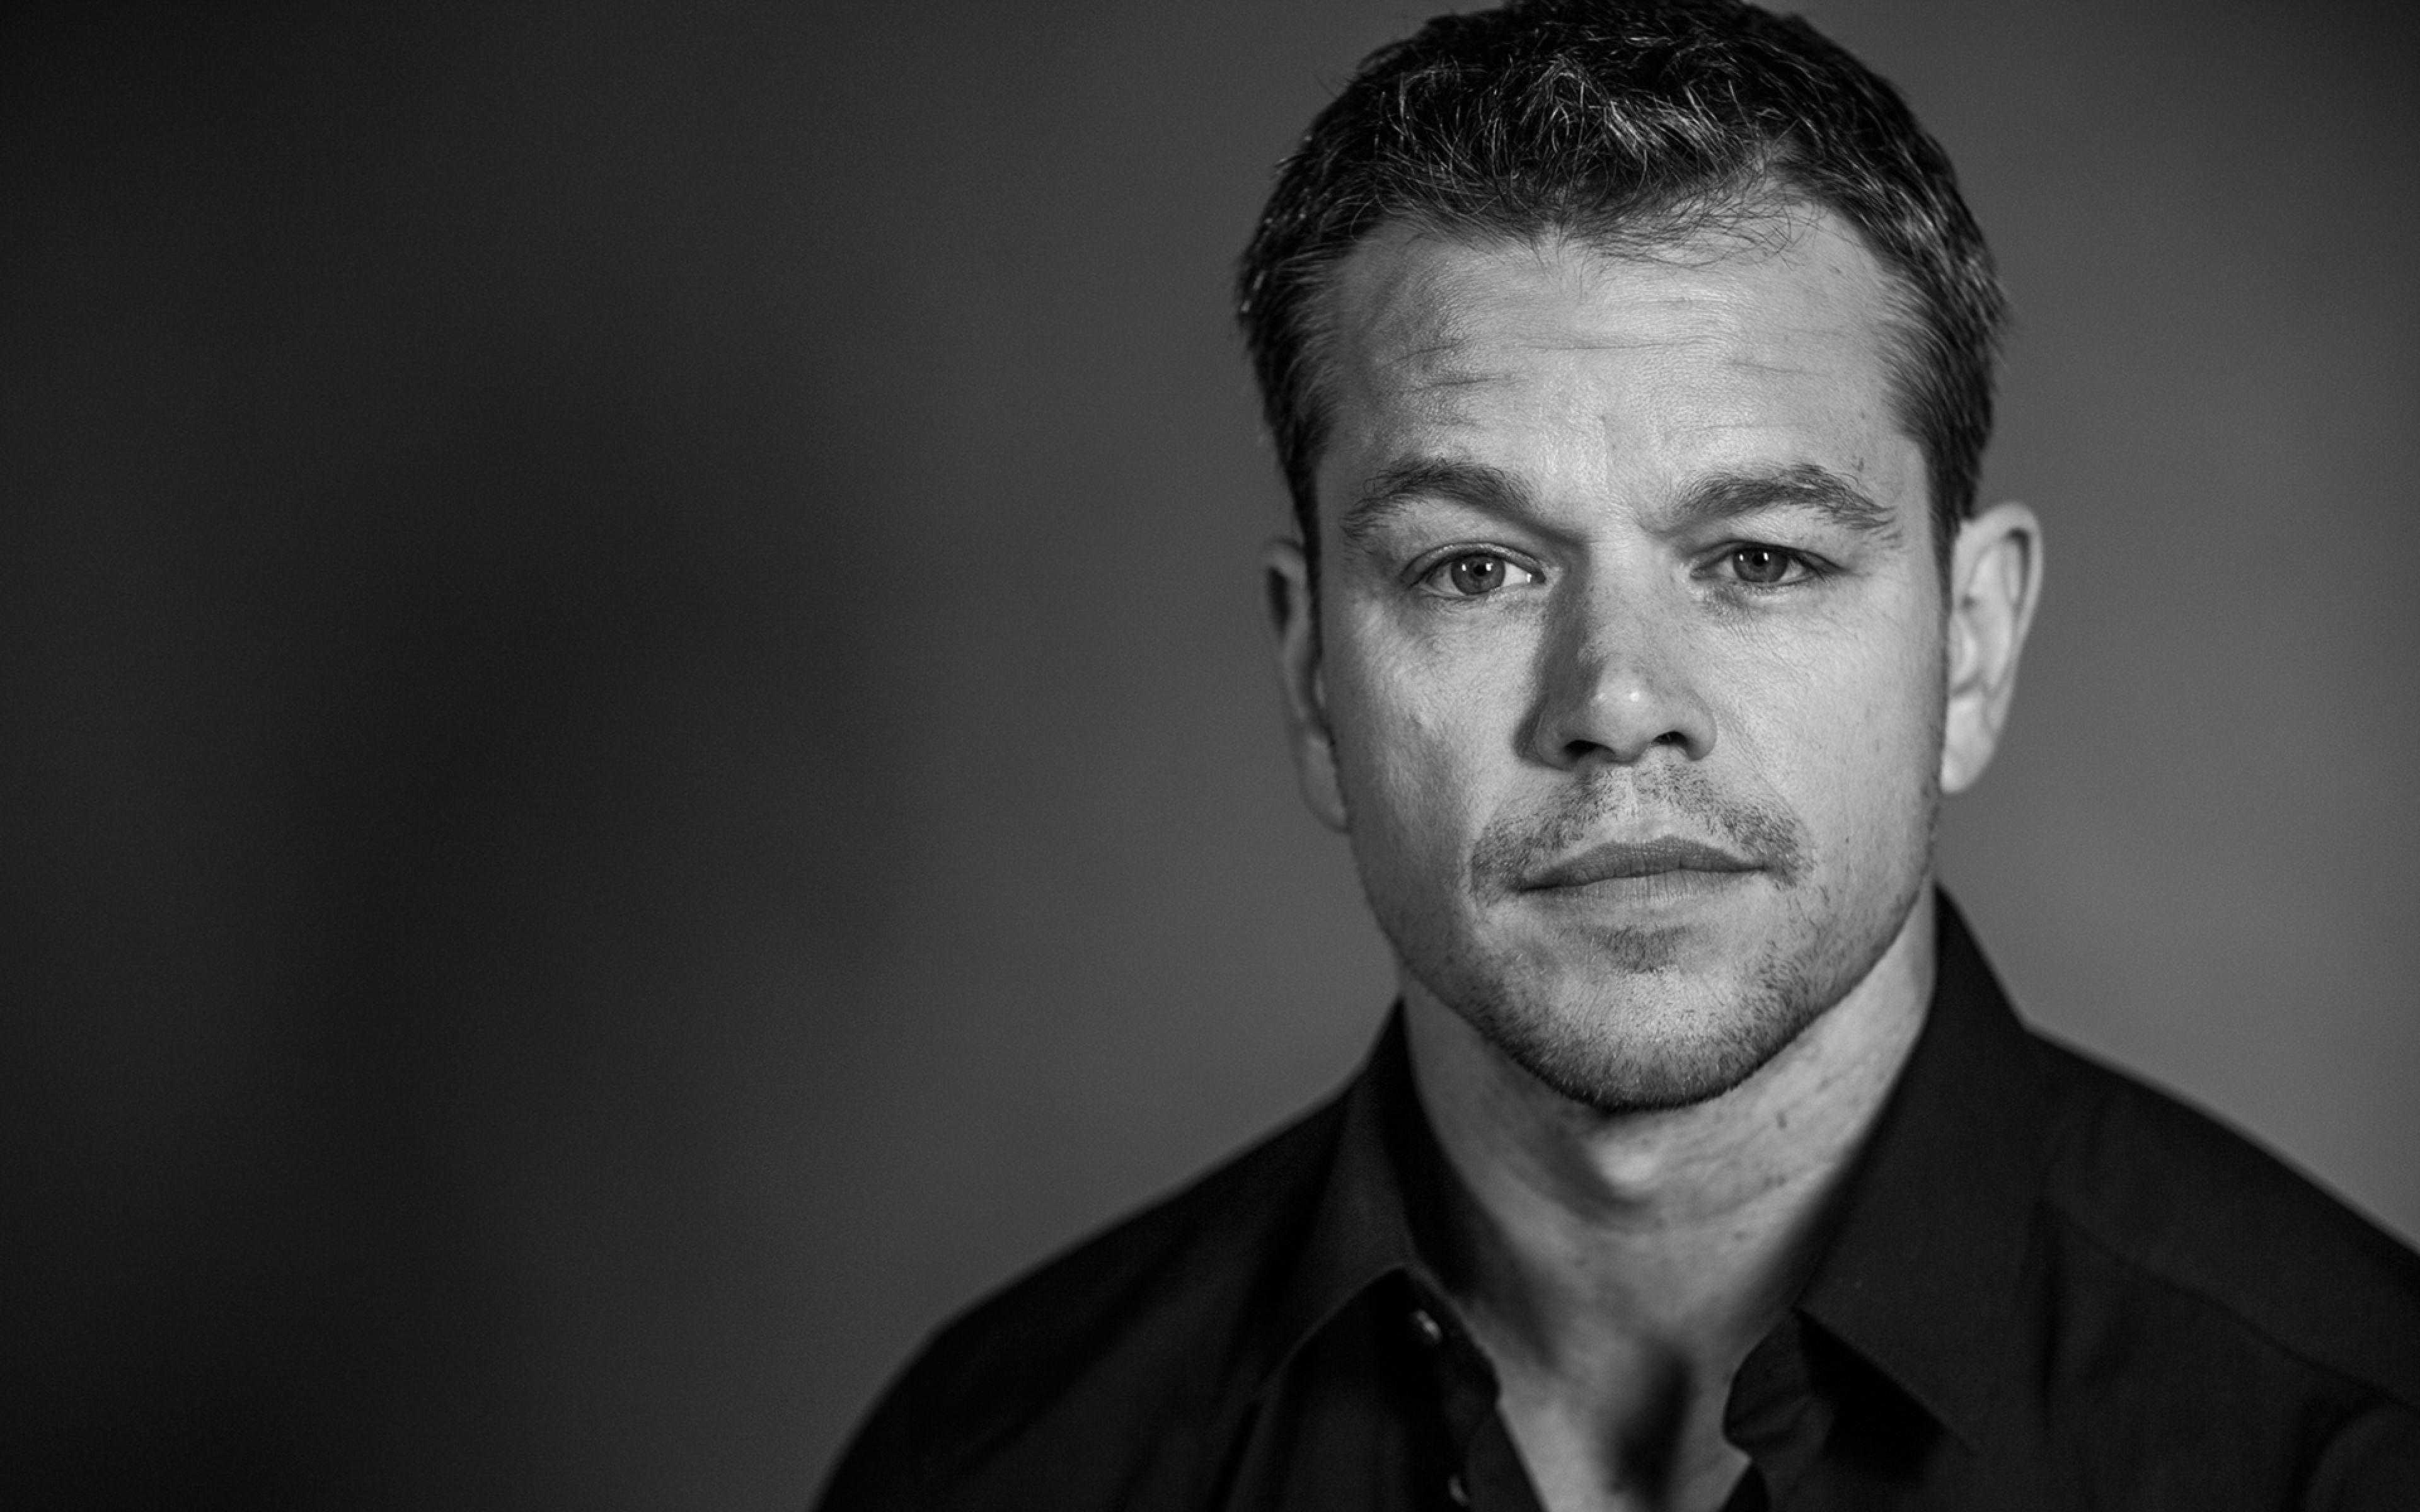 Matt Damon Wallpapers Top Free Matt Damon Backgrounds Images, Photos, Reviews